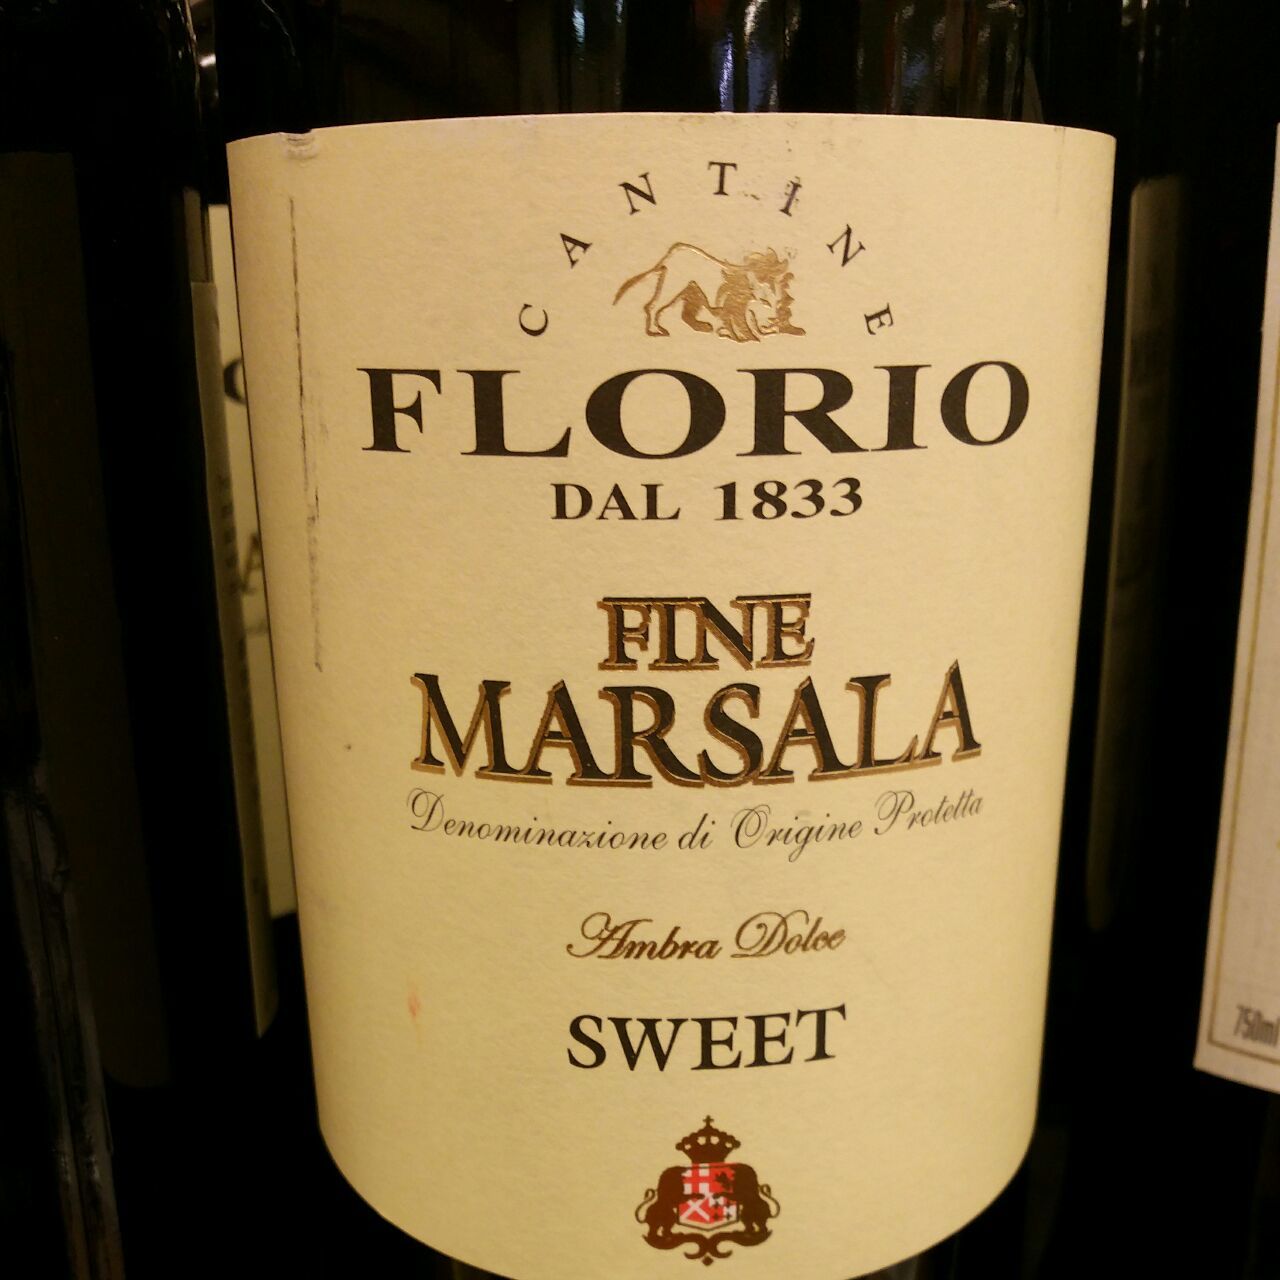 Dolce sweet. Марсала амбра. Марсала Веккьо Флорио. Вино Florio, "Vecchio Florio", Marsala фото. Ambra вино.